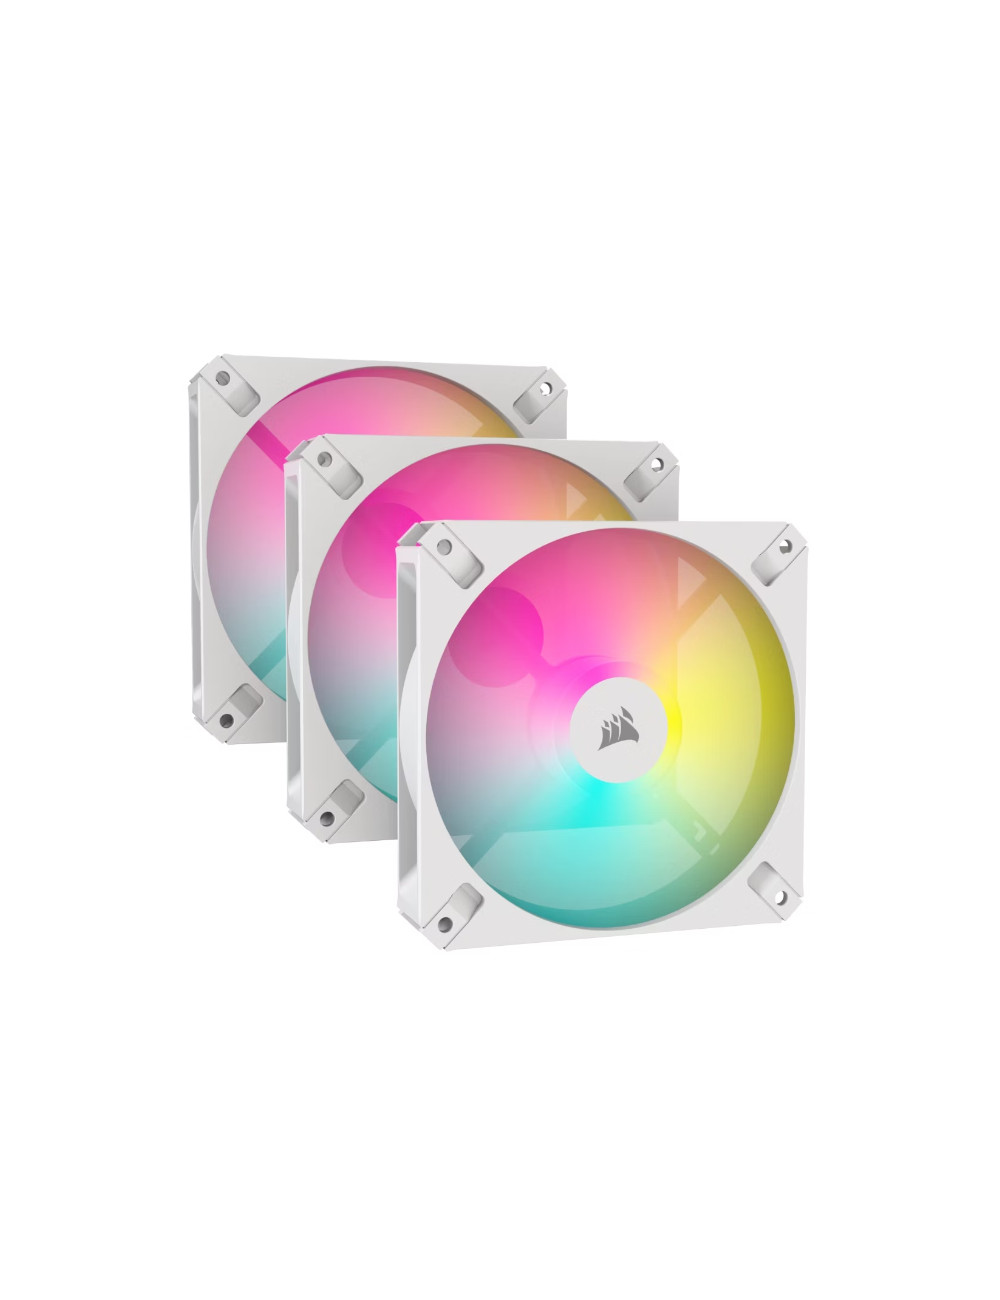 iCUE AR120 Digital RGB 120mm PWM Fan (Triple Pack) | Case Fan